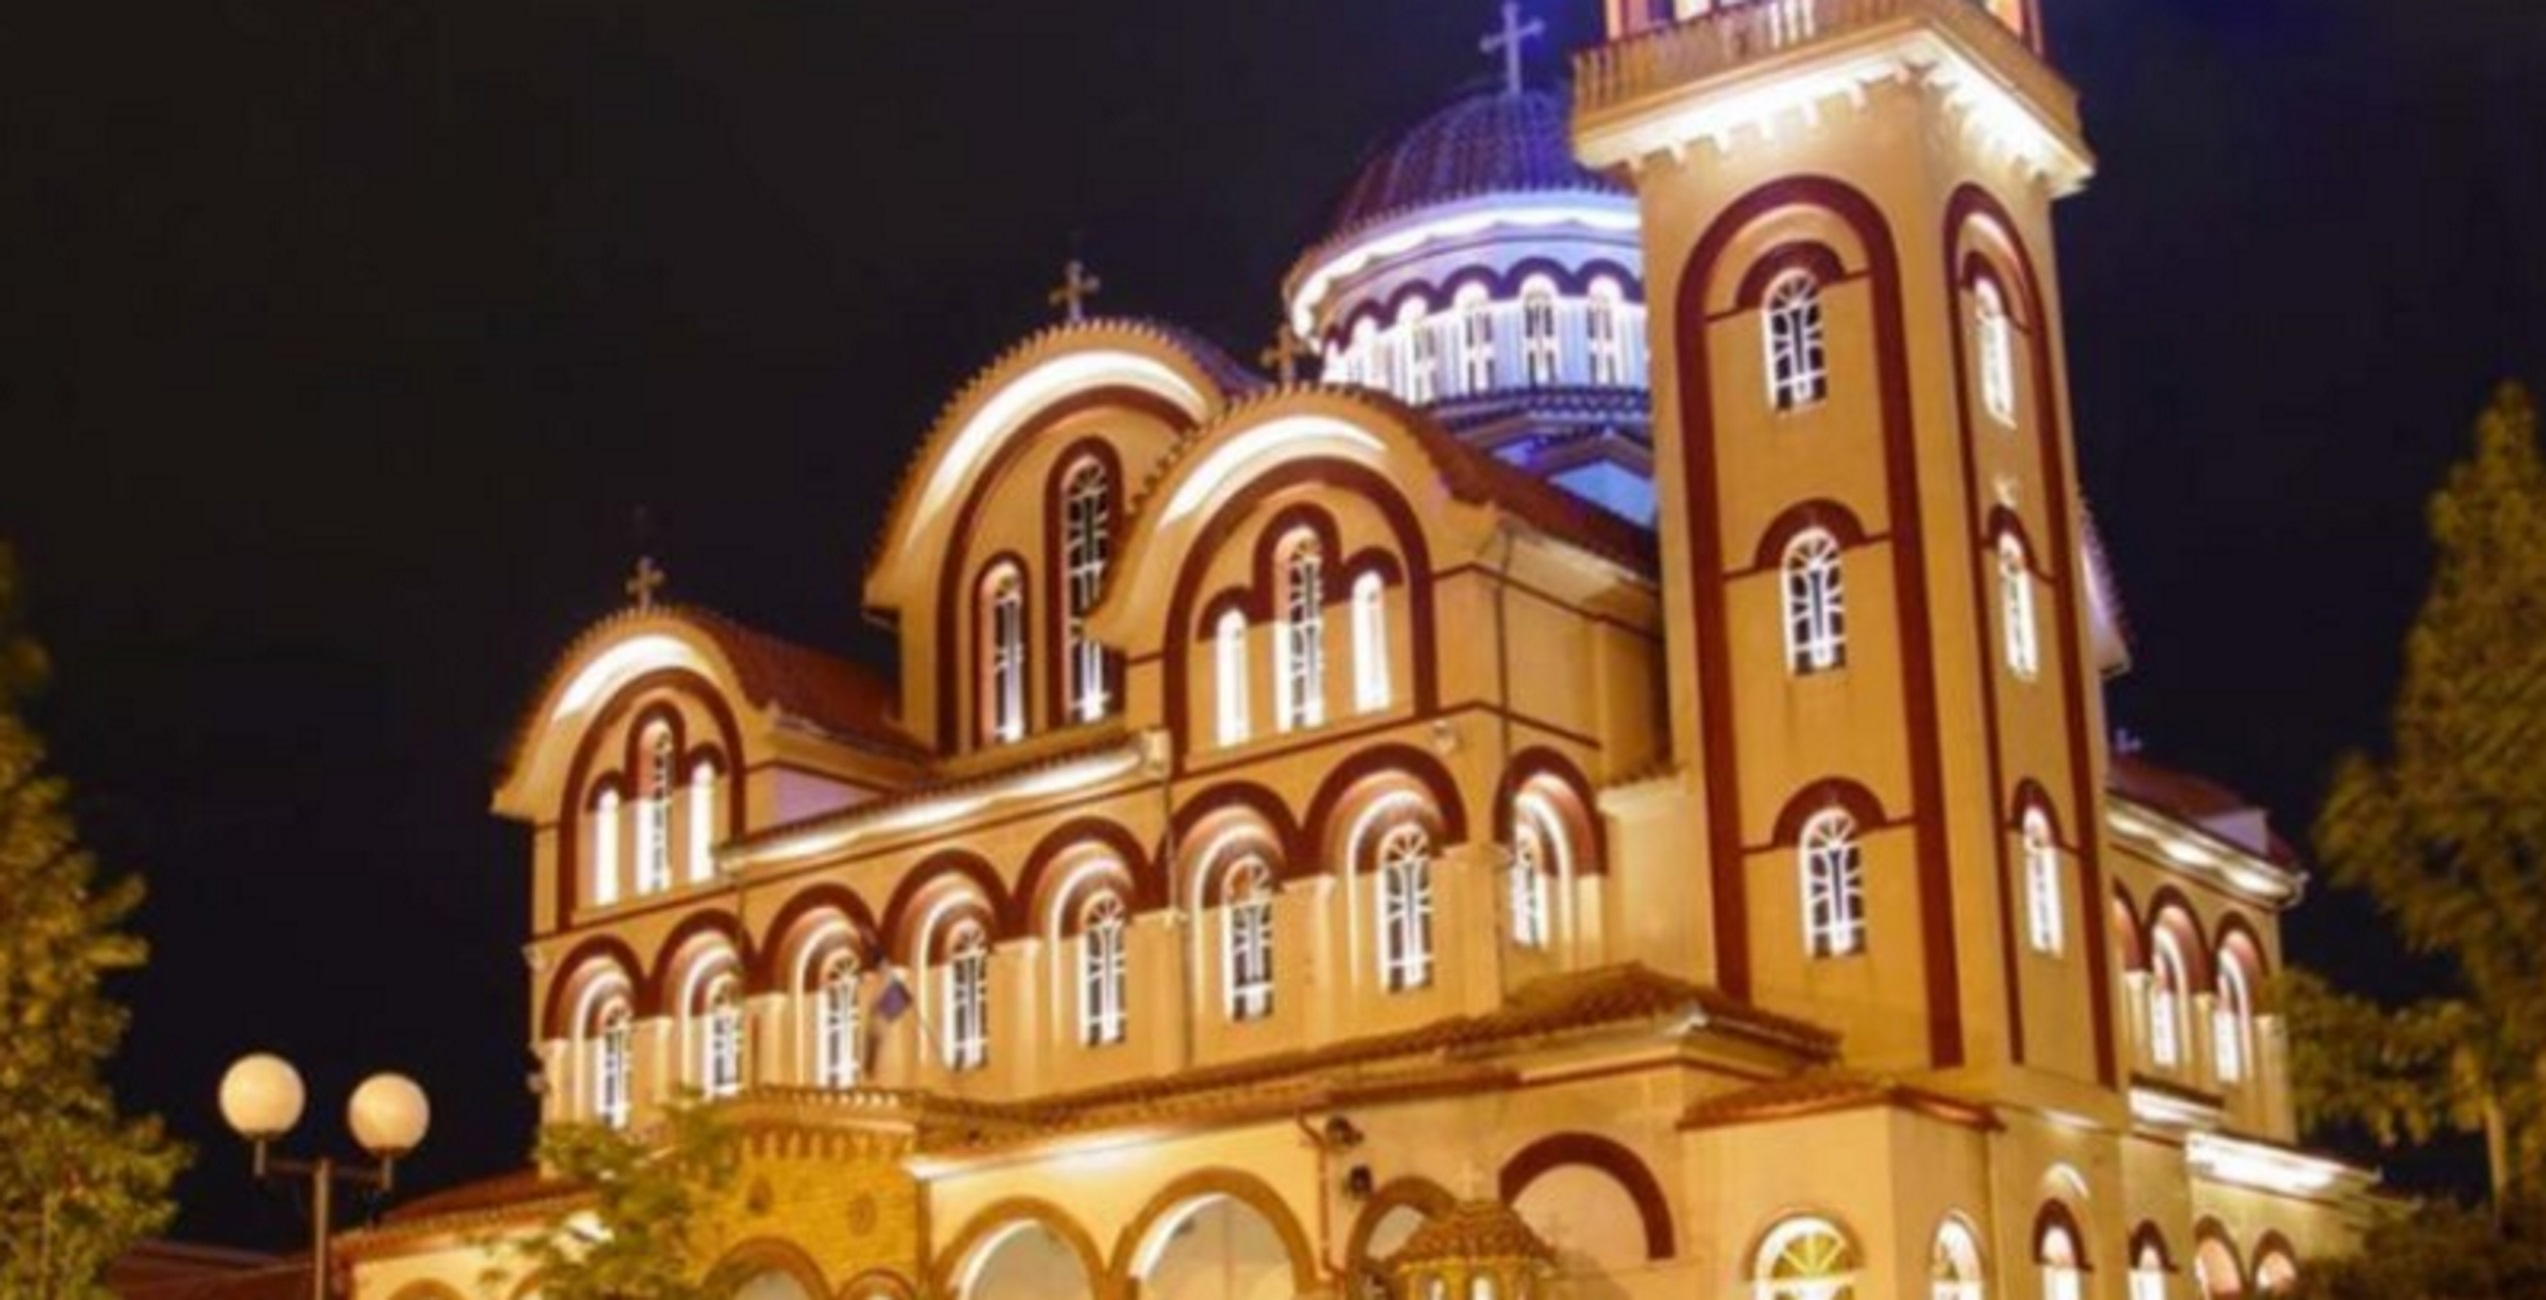 Λάρισα: Αυτή είναι η πιο hi tech εκκλησία της χώρας που μετράει με φωτοκύτταρο τους πιστούς